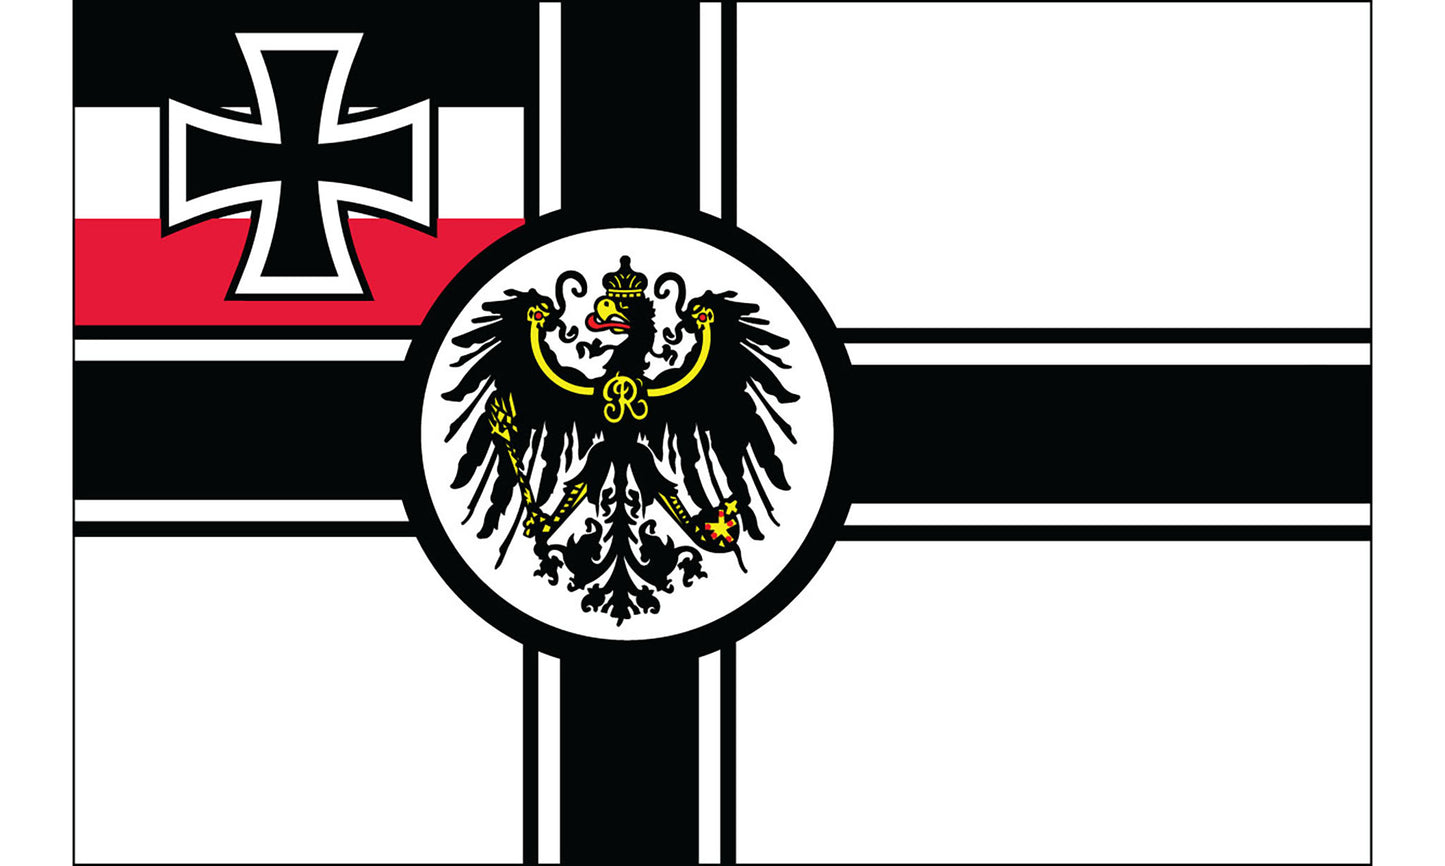 UF-KZR-150x90 - флаг кайзеровской Германии времен Первой мировой войны 1903-1918 гг.